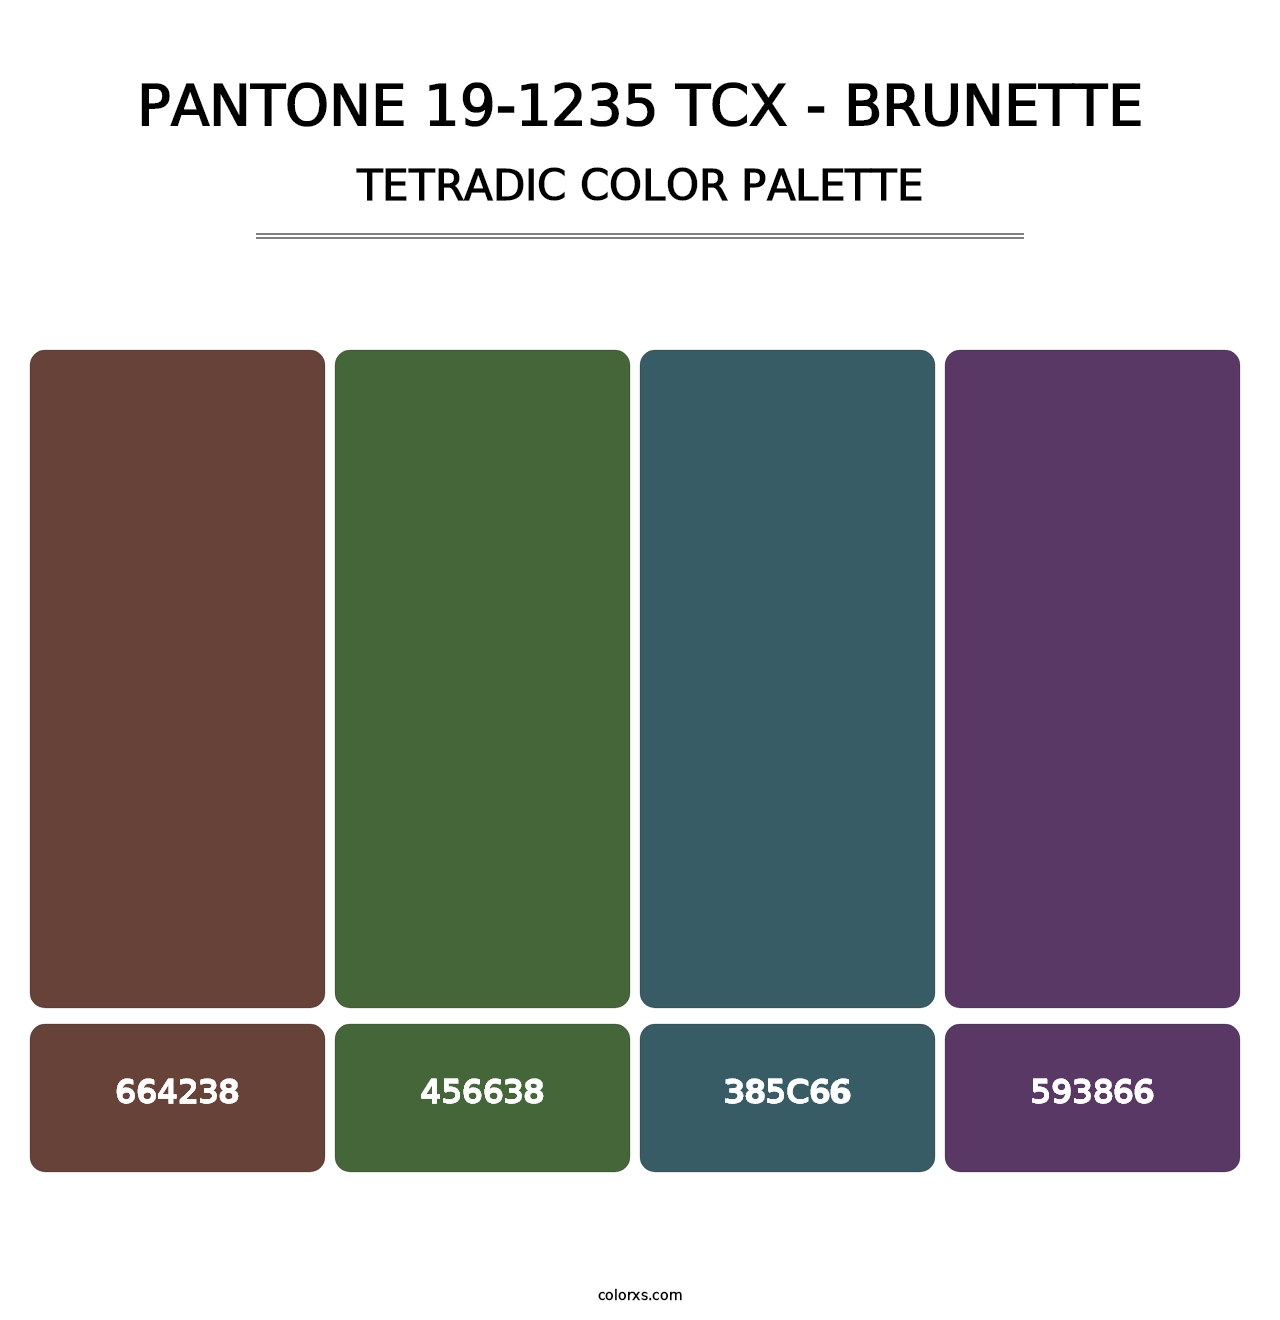 PANTONE 19-1235 TCX - Brunette - Tetradic Color Palette